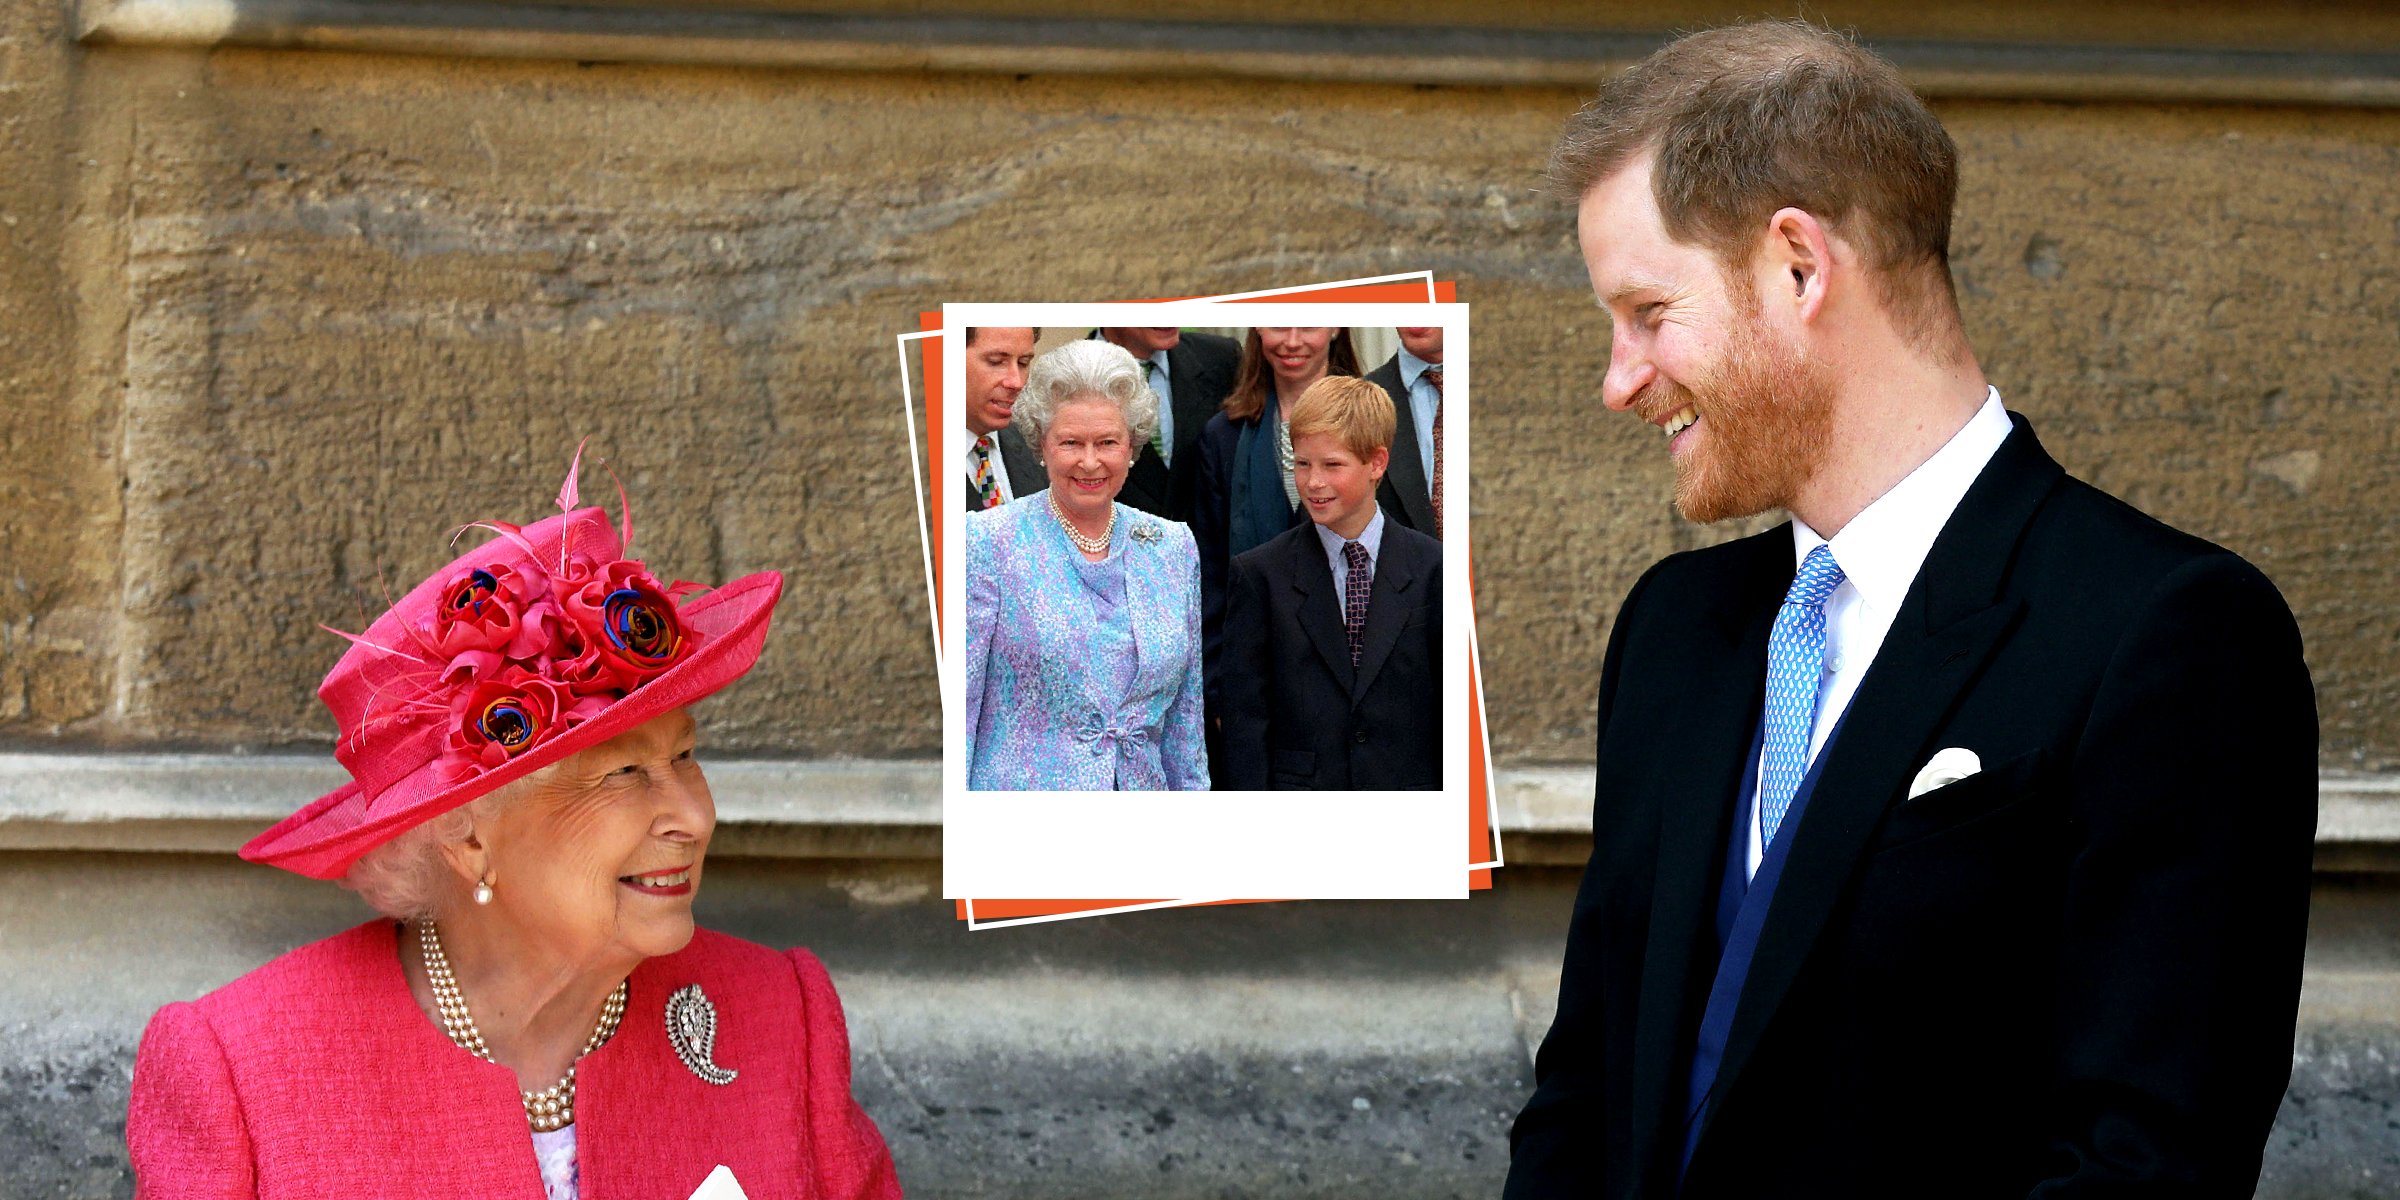 Queen Elizabeth II and Prince Harry | Queen Elizabeth II and Prince Harry | Source: Getty Images